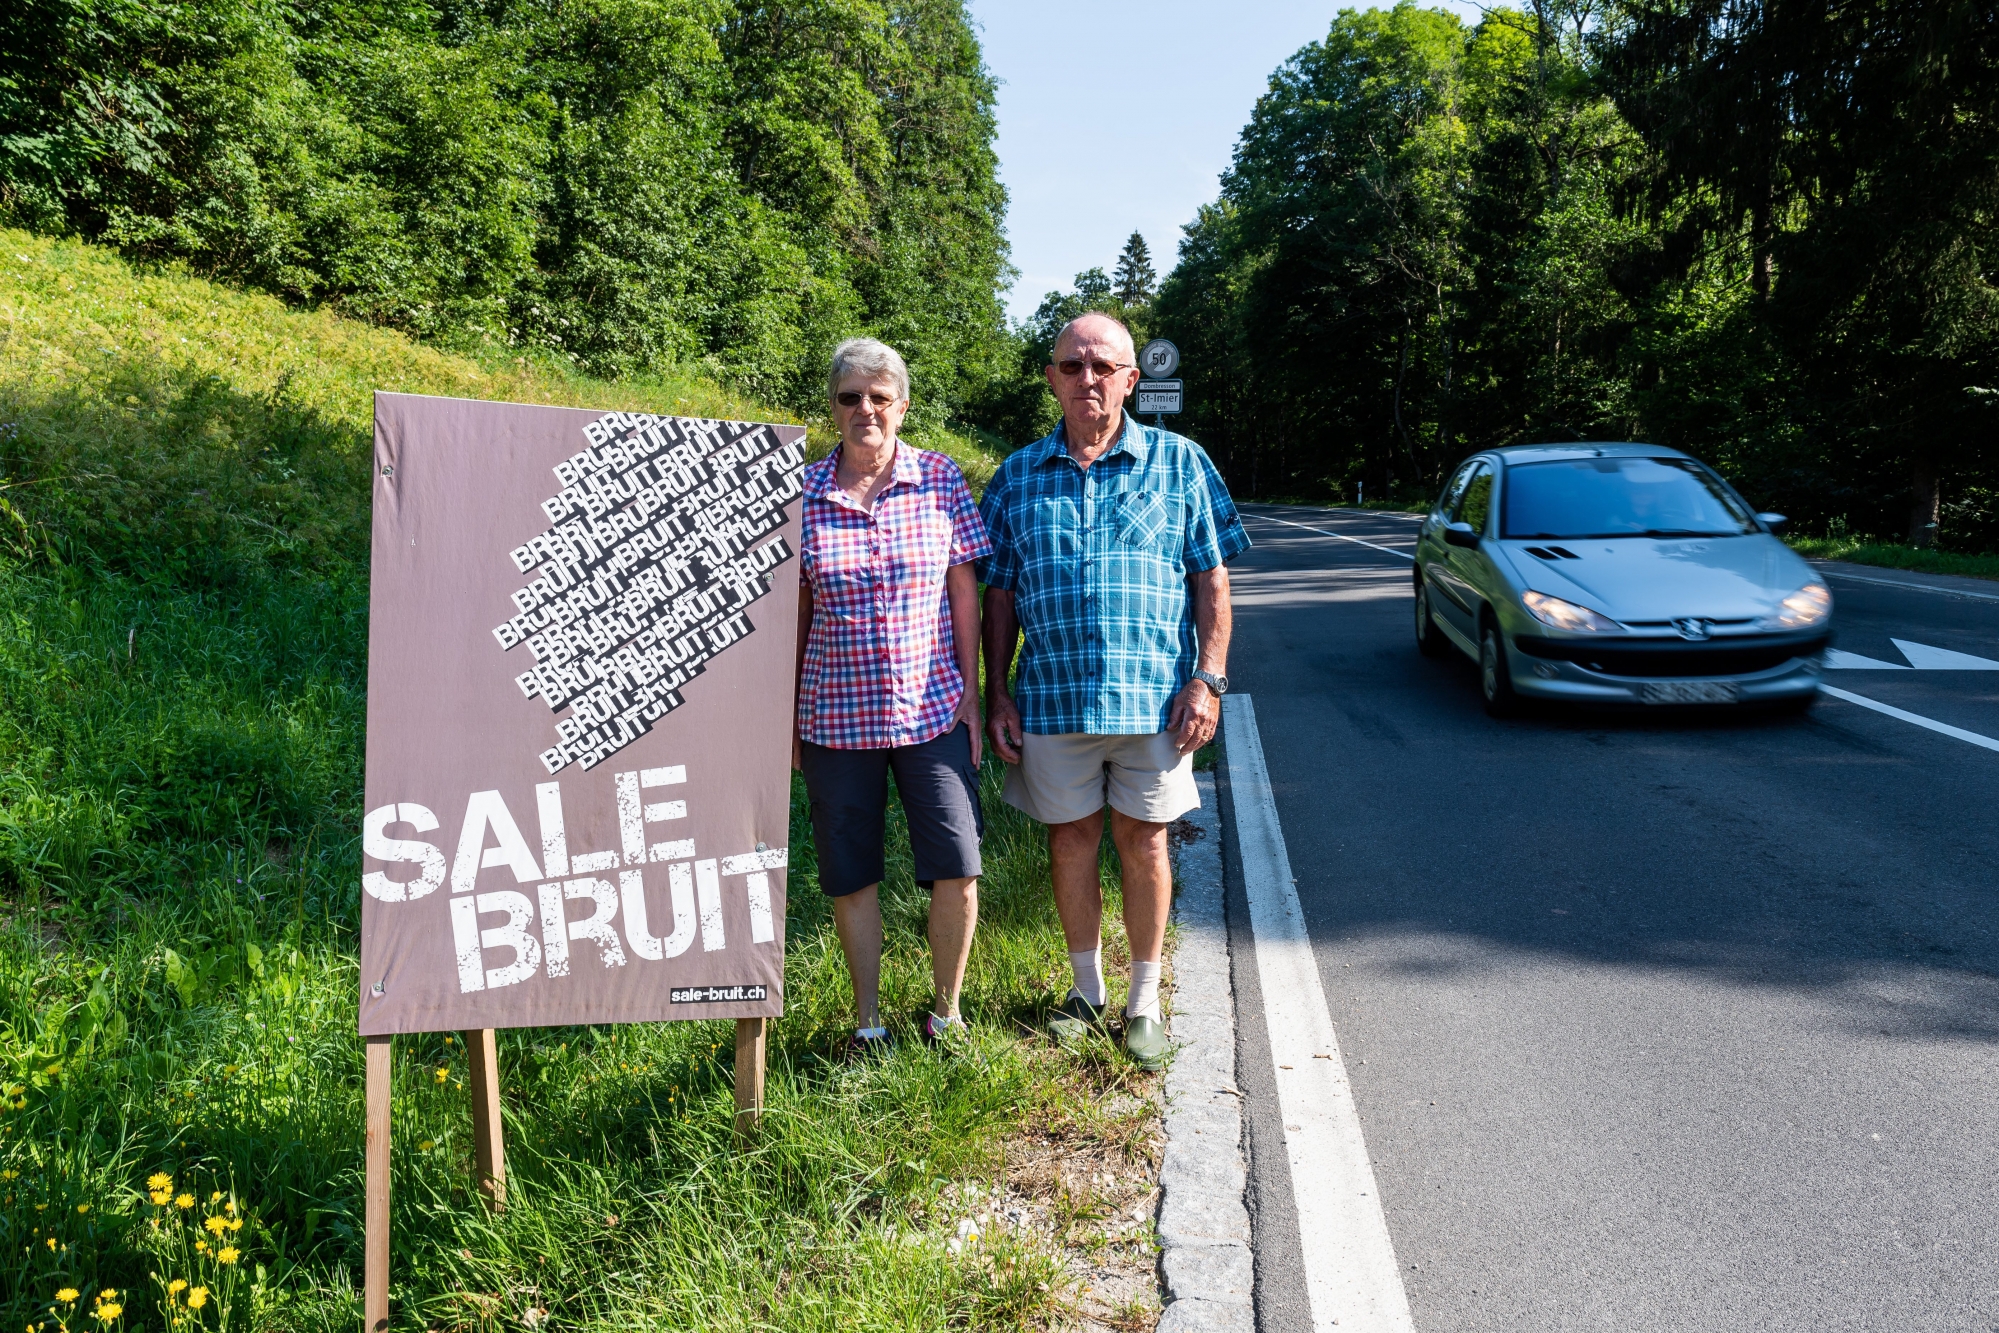 Exaspérés par le bruit, Nicole et Jean-Pierre Jeanneret ont posé cette affiche sur le bord de la route dans l'espoir de sensibiliser les conducteurs à mettre la pédale douce.